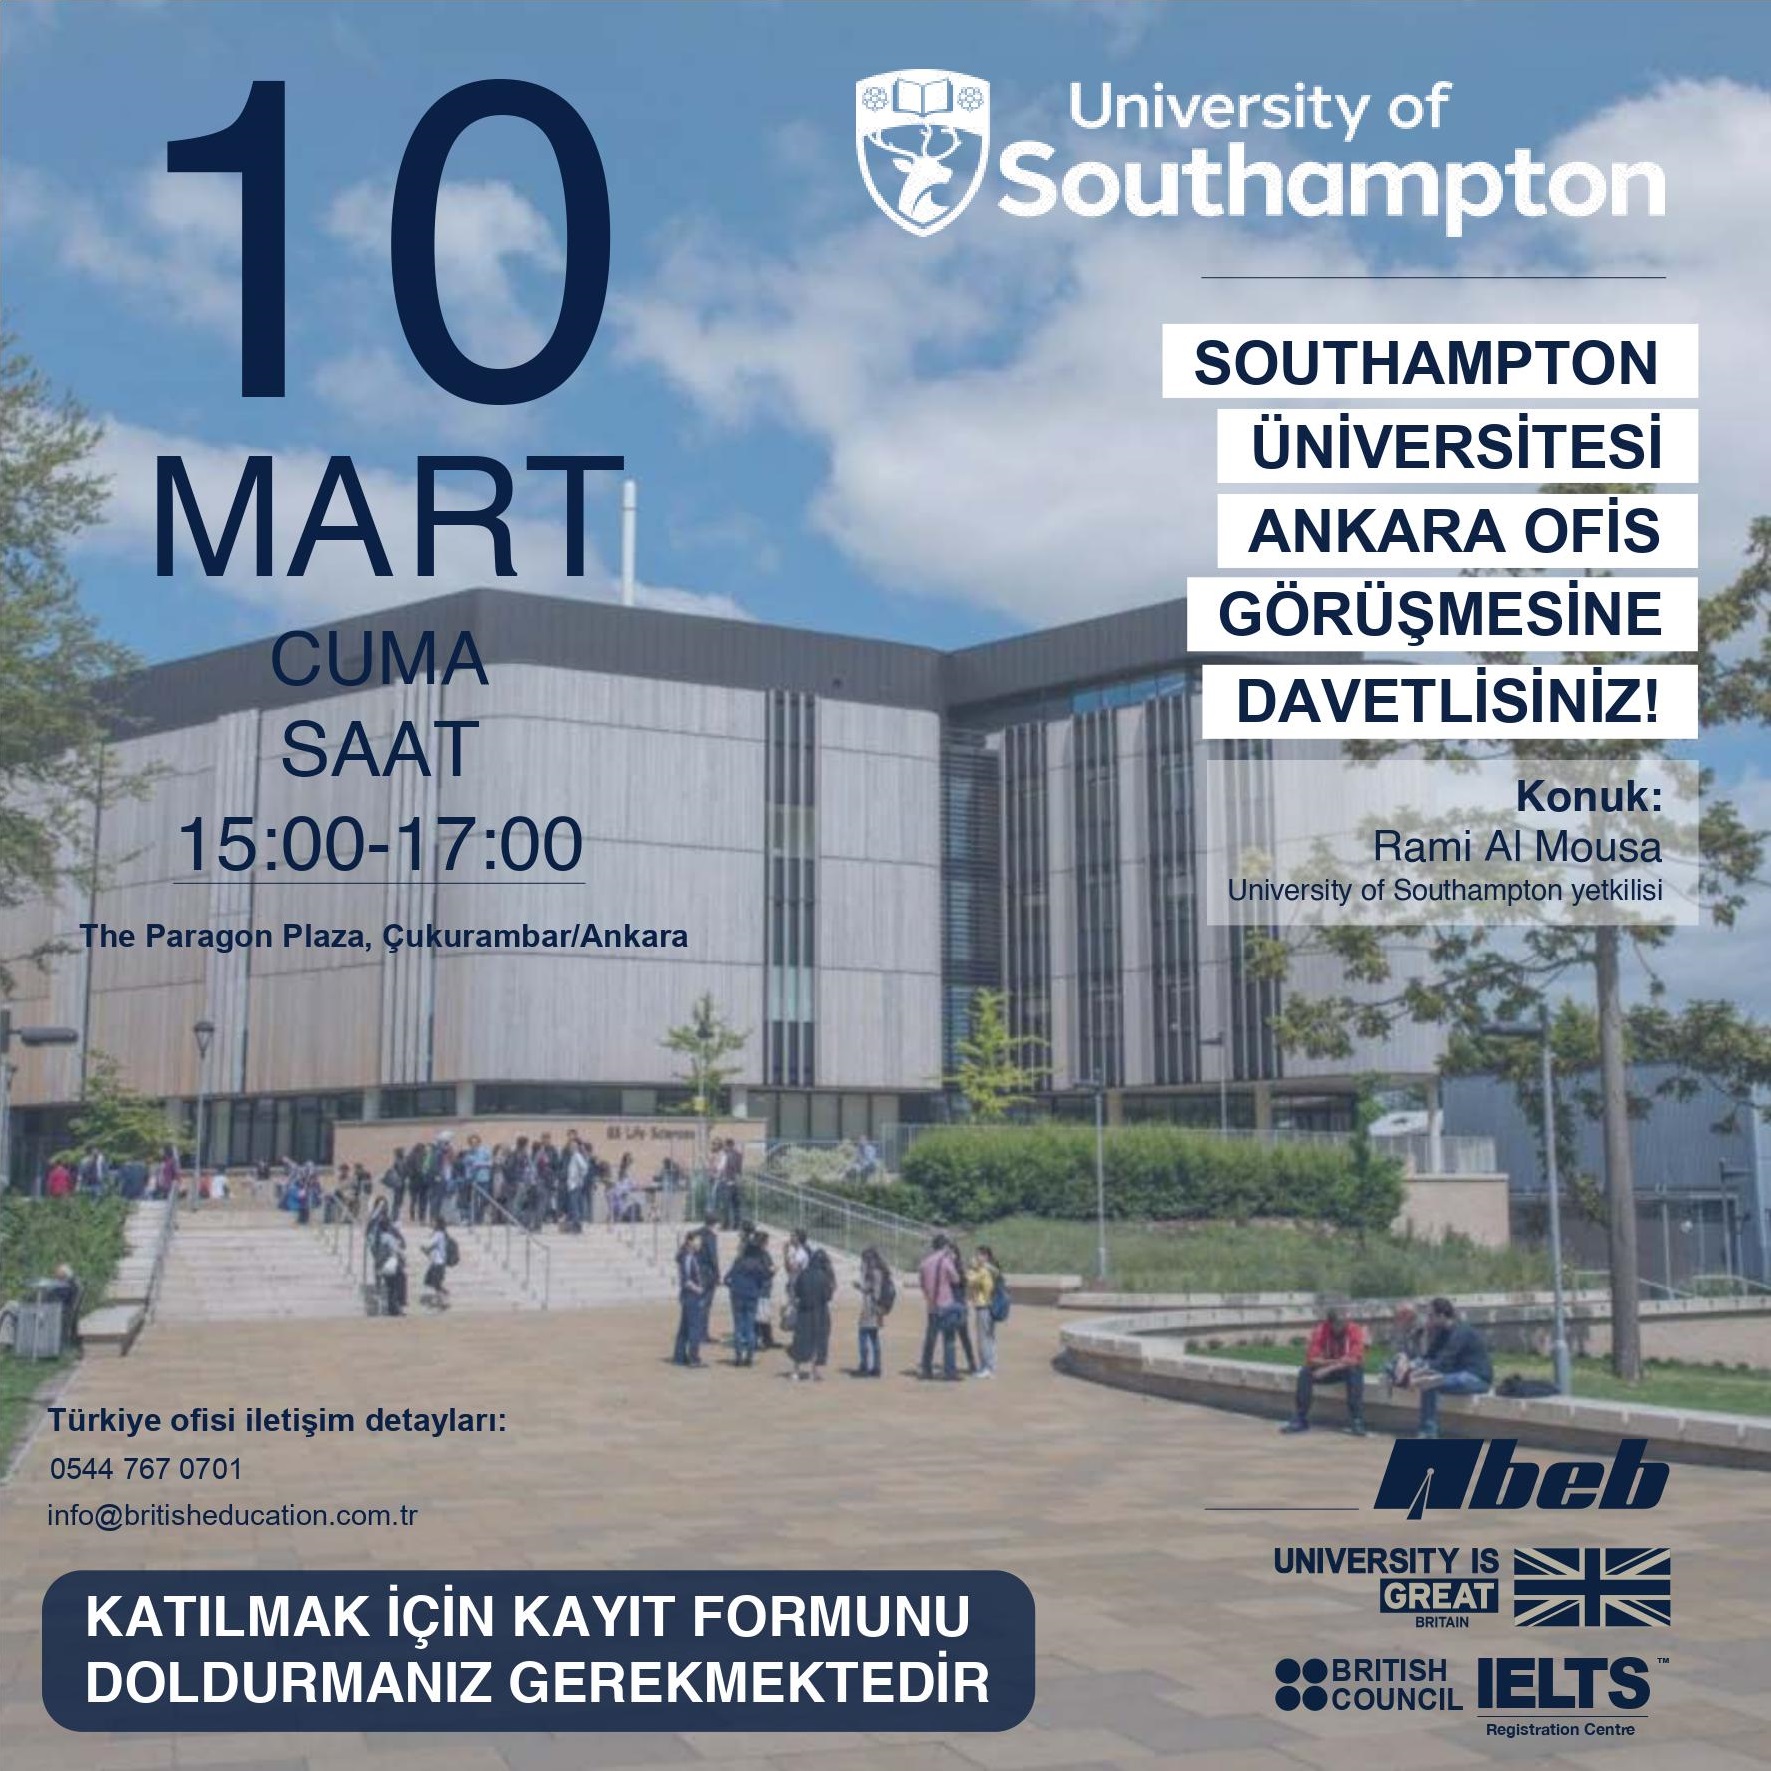 Dünyanın en iyi 80 Üniversitesi içerisinde yer alan University of Southampton'un Ankara'da öğrencilerle bir araya geleceği etkinliğin davetiye görseli ve görsel içerisinde yer alan Üniversite kampüsü ile öğrenciler